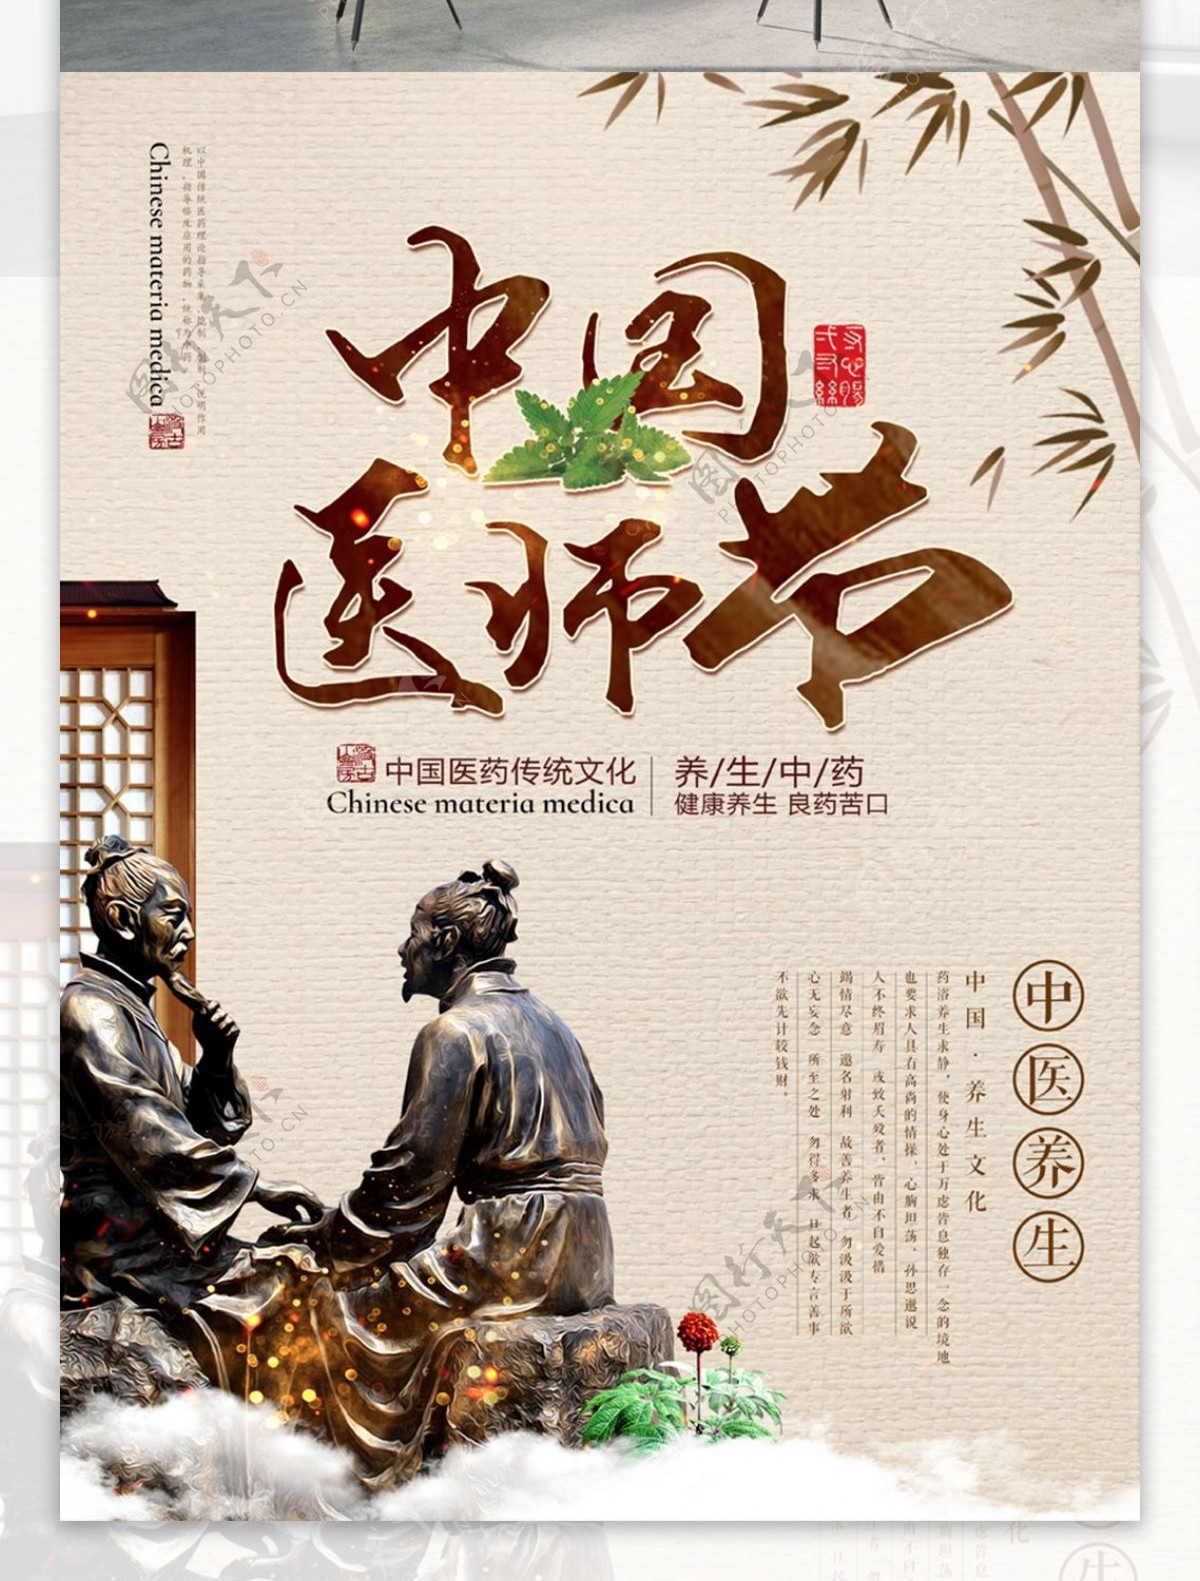 复古中国风中国医师节中医文化海报